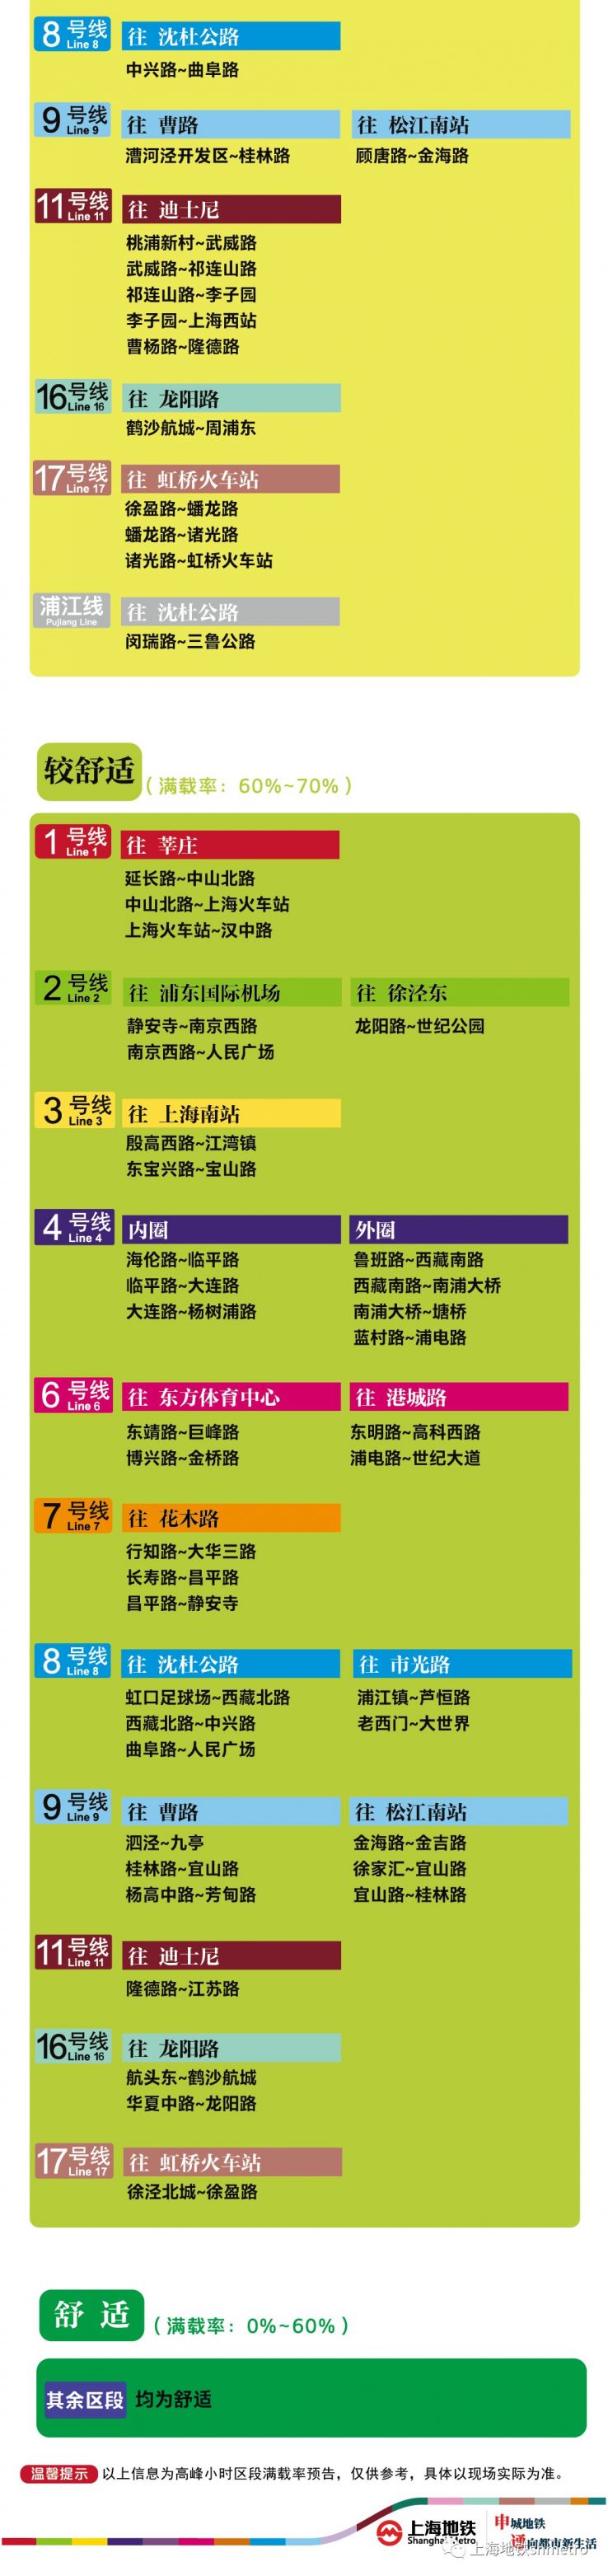 6月17日上海11座地铁站早高峰限流(附舒适度预告)